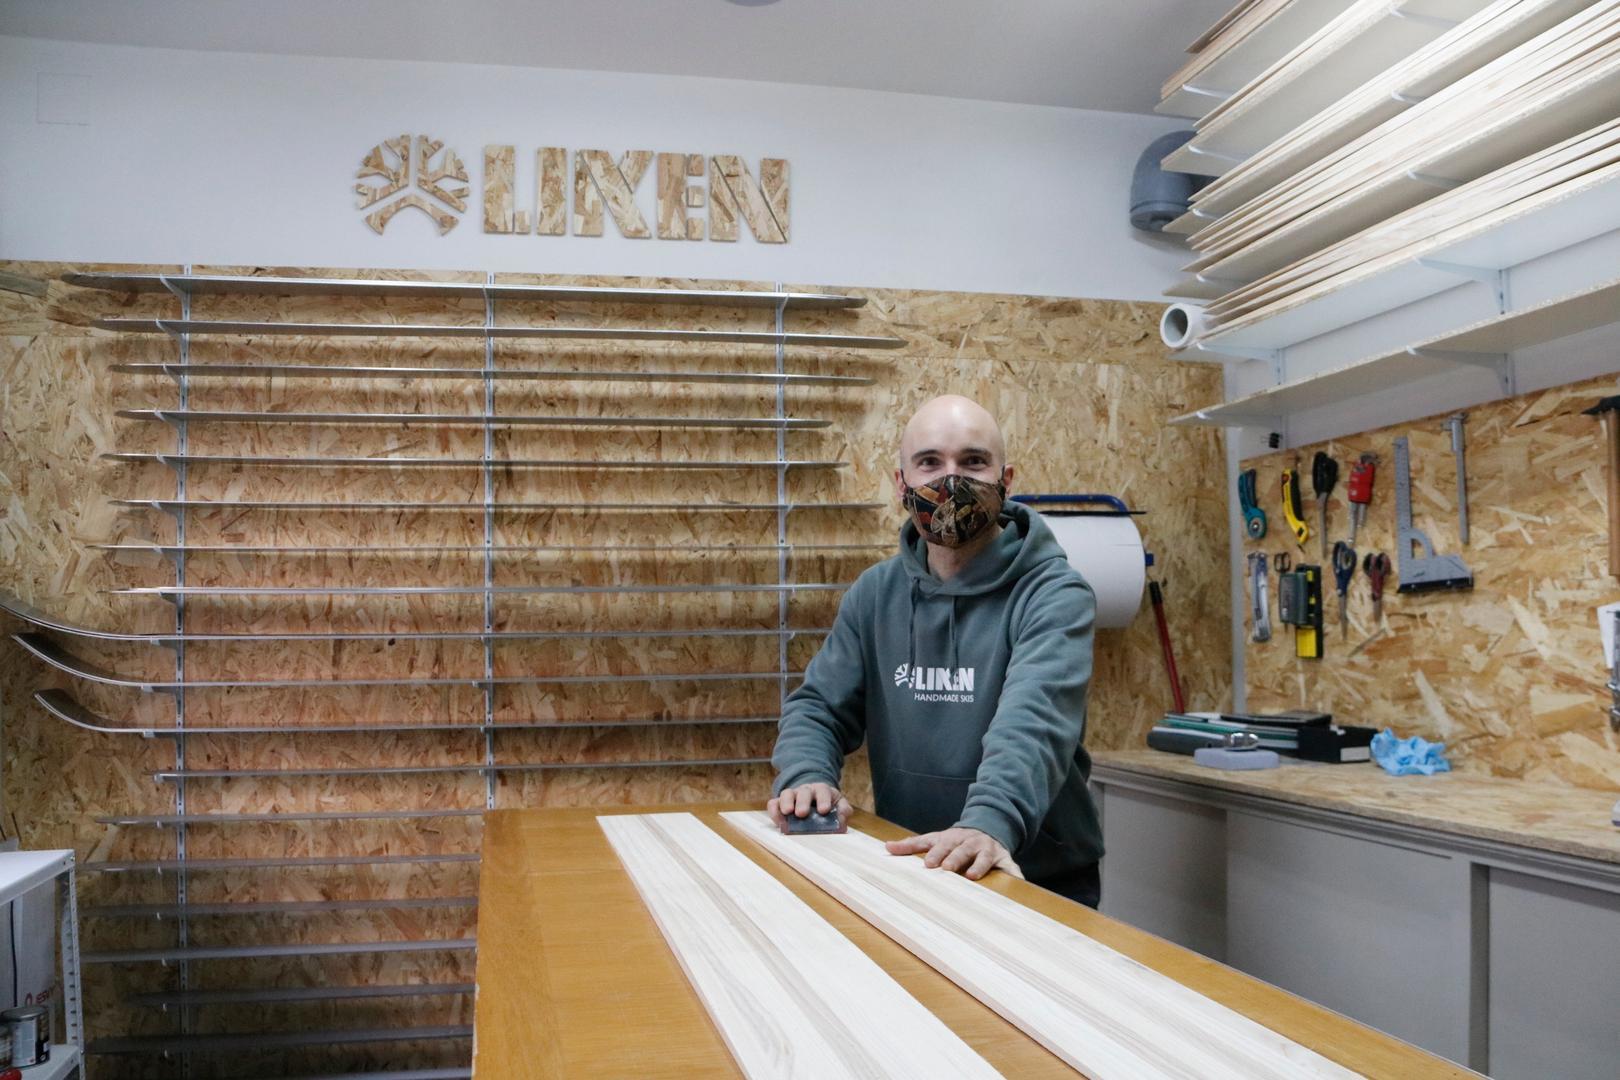 Pla general d'Oriol Baró, fundador de Liken Skis, al seu taller a La Pobla de Lillet. Imatge del 28 de desembre de 2021. (Horitzontal)